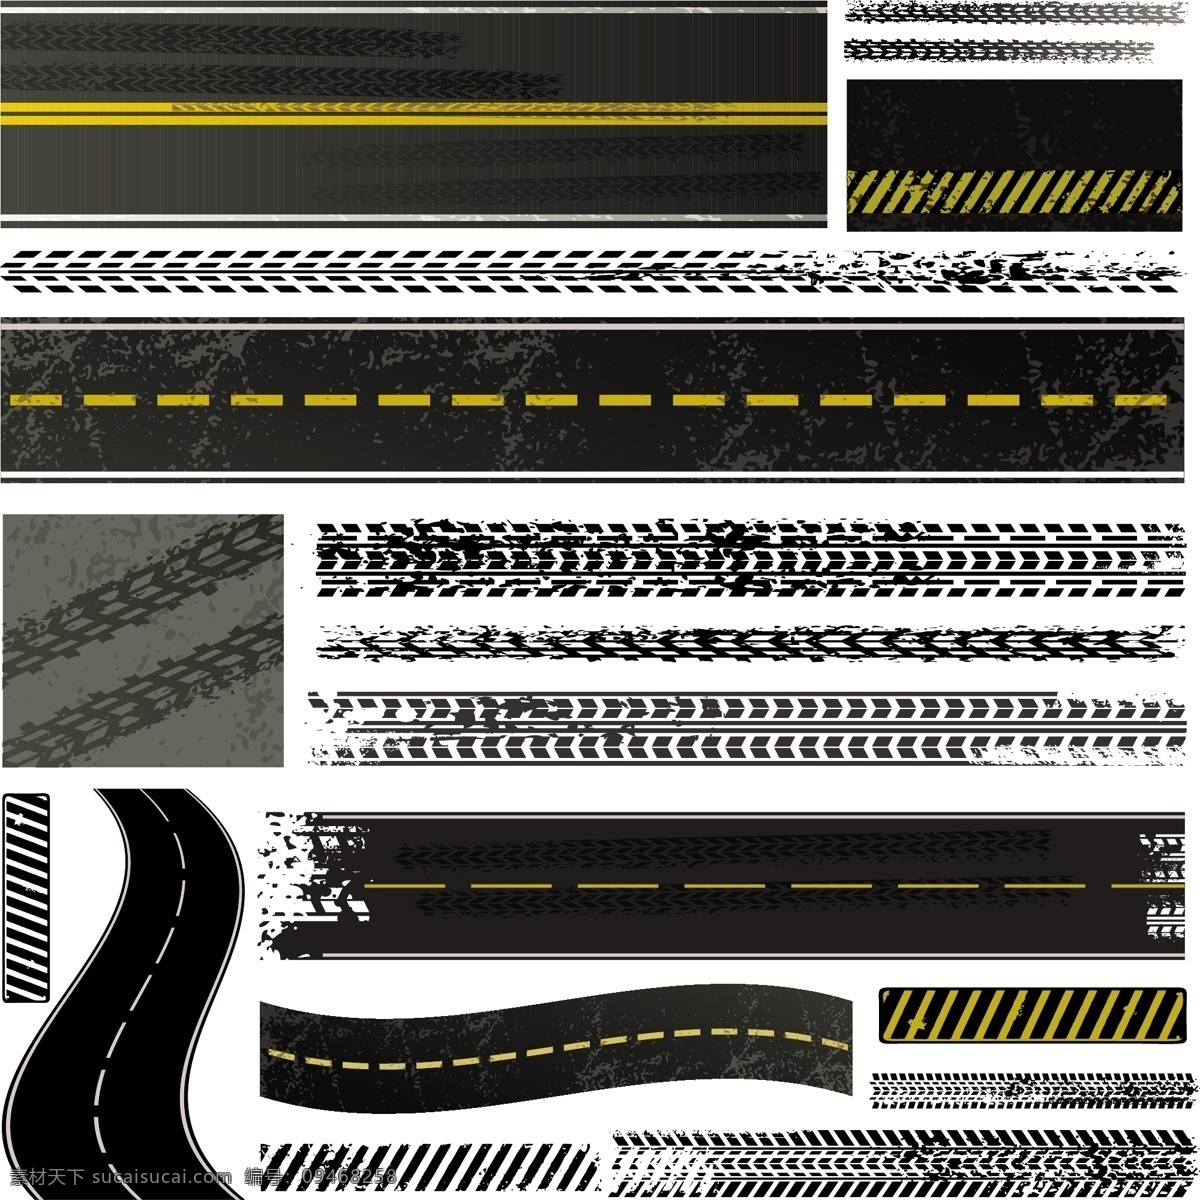 轮胎痕迹 公路道路 轮胎 痕迹 压印 公路 道路 马路 纹理 背景 底纹 矢量素材 其他矢量 矢量